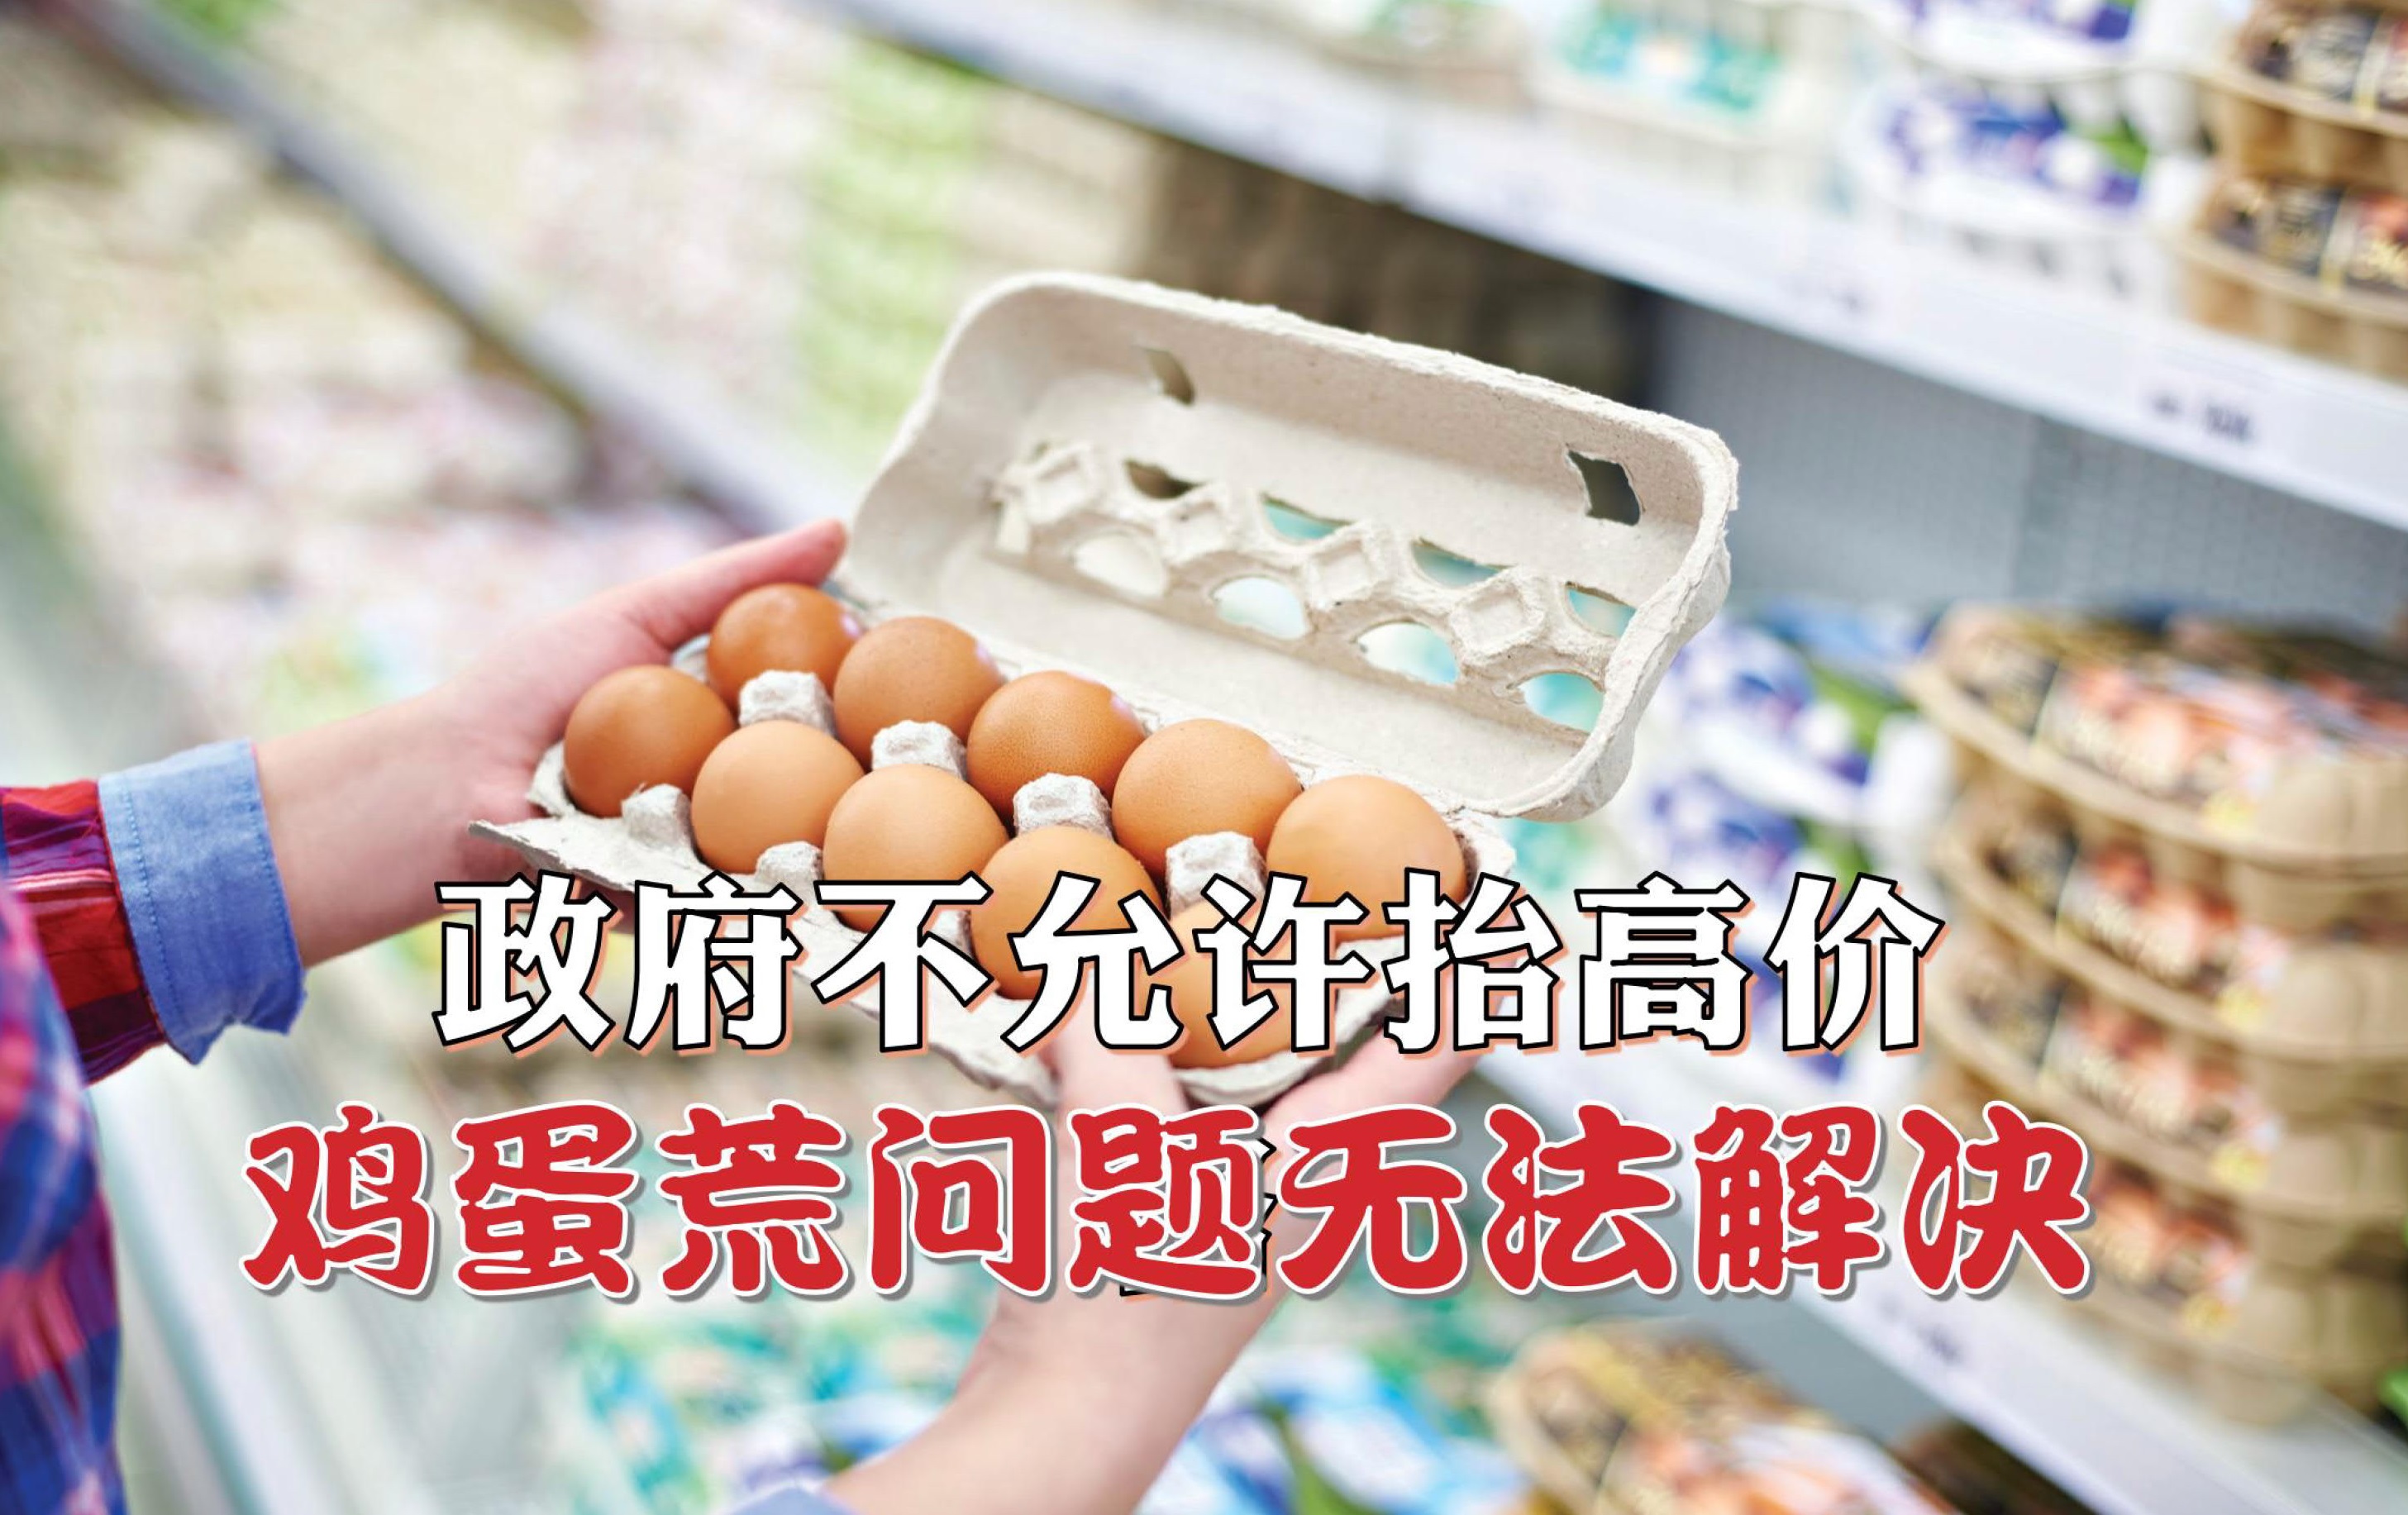 政府不允许抬高价格 鸡蛋荒问题无法解决 - 农牧世界